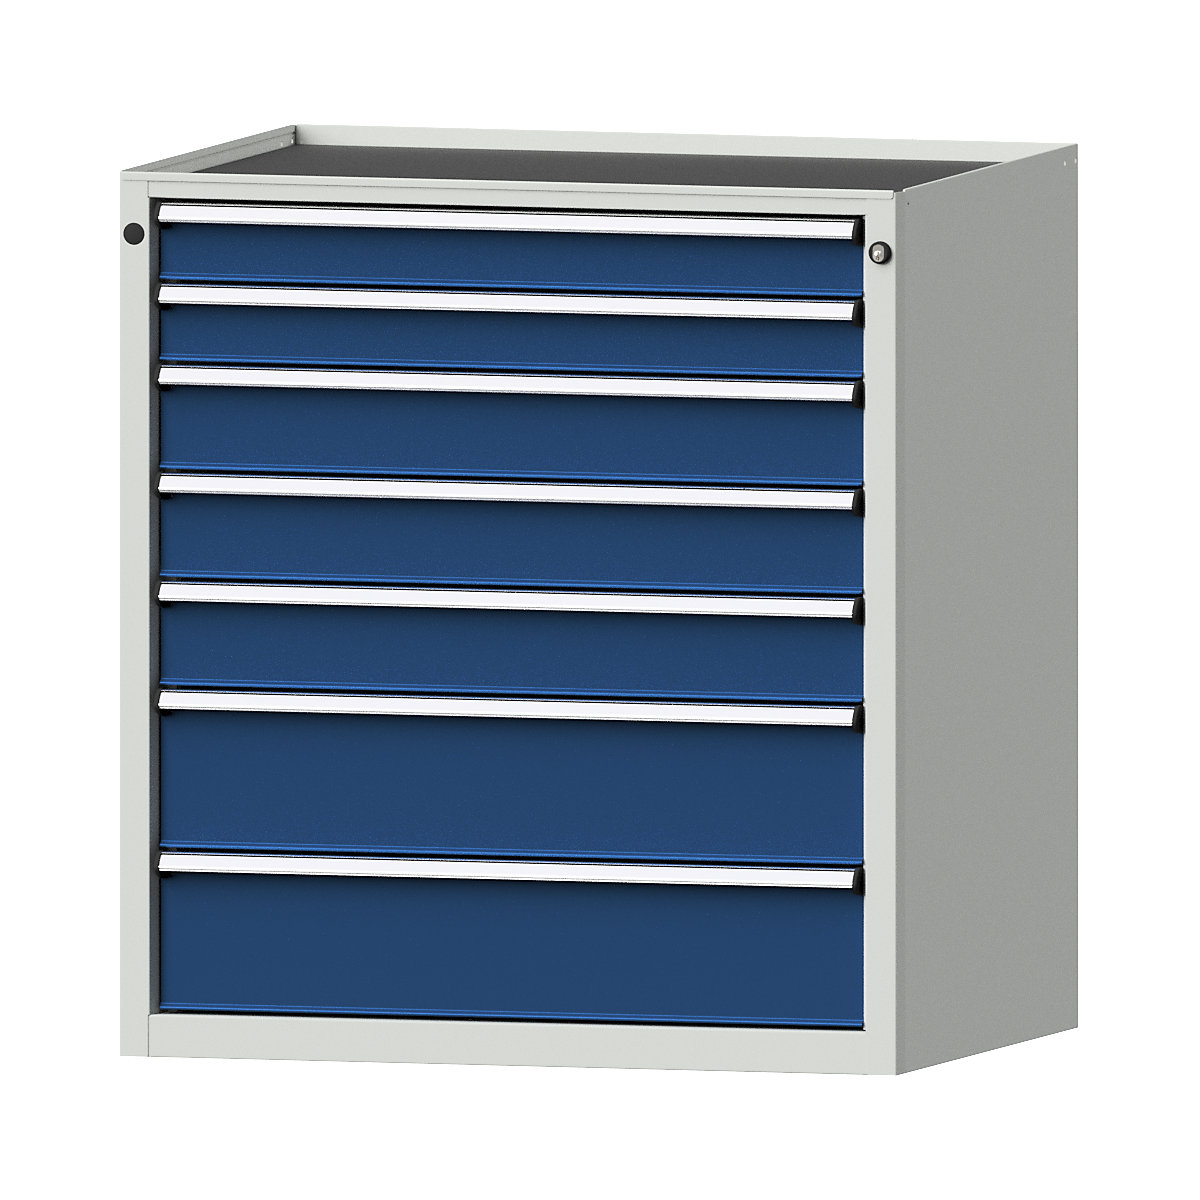 Szafa z szufladami – ANKE, szer. x głęb. 910 x 675 mm, 7 szuflad, wys. 980 mm, front niebieski gencjanowy-12